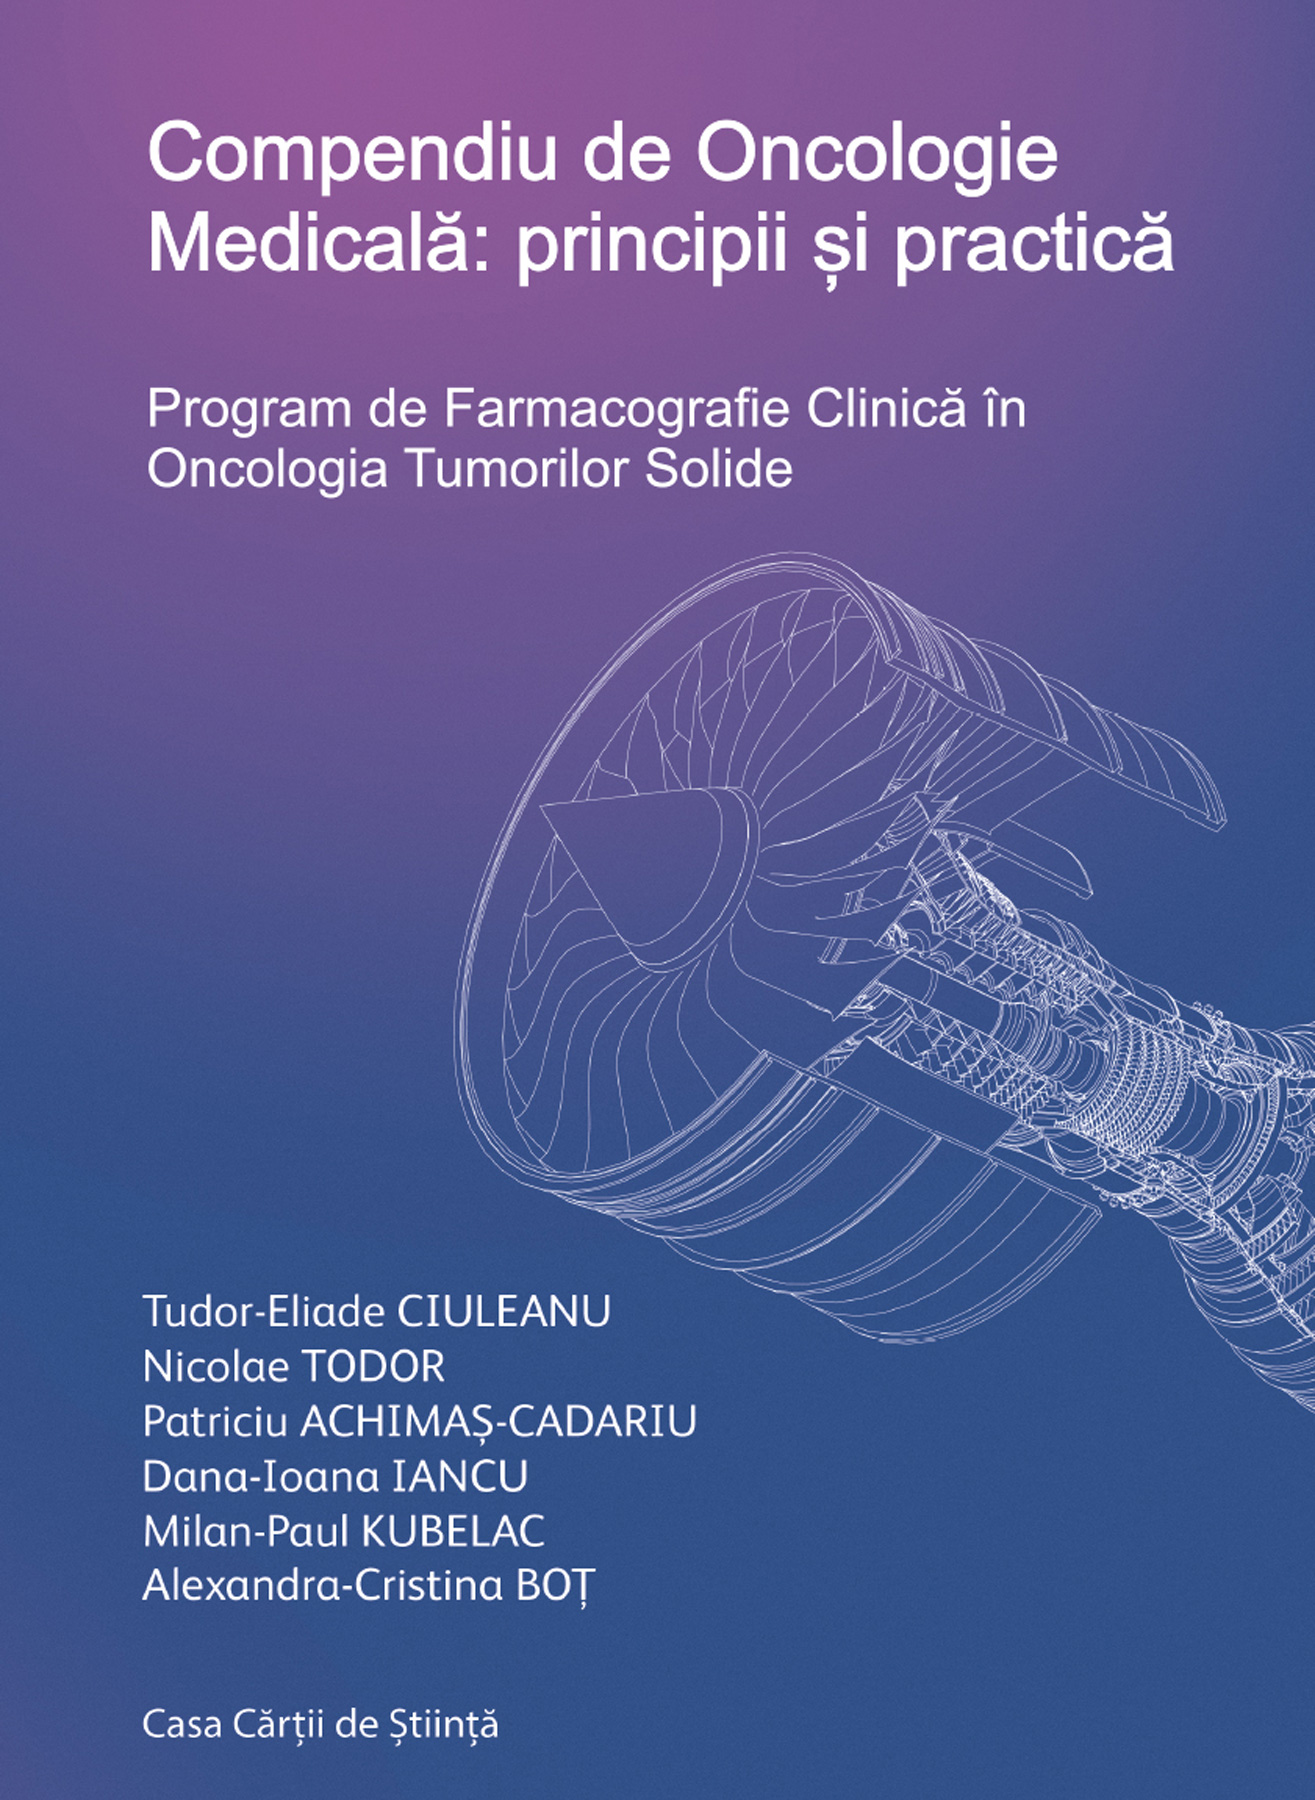 Compendiu de Oncologie Medicala: principii si practica | Tudor-Eliade Ciuleanu, Nicolae Todor carturesti.ro poza bestsellers.ro